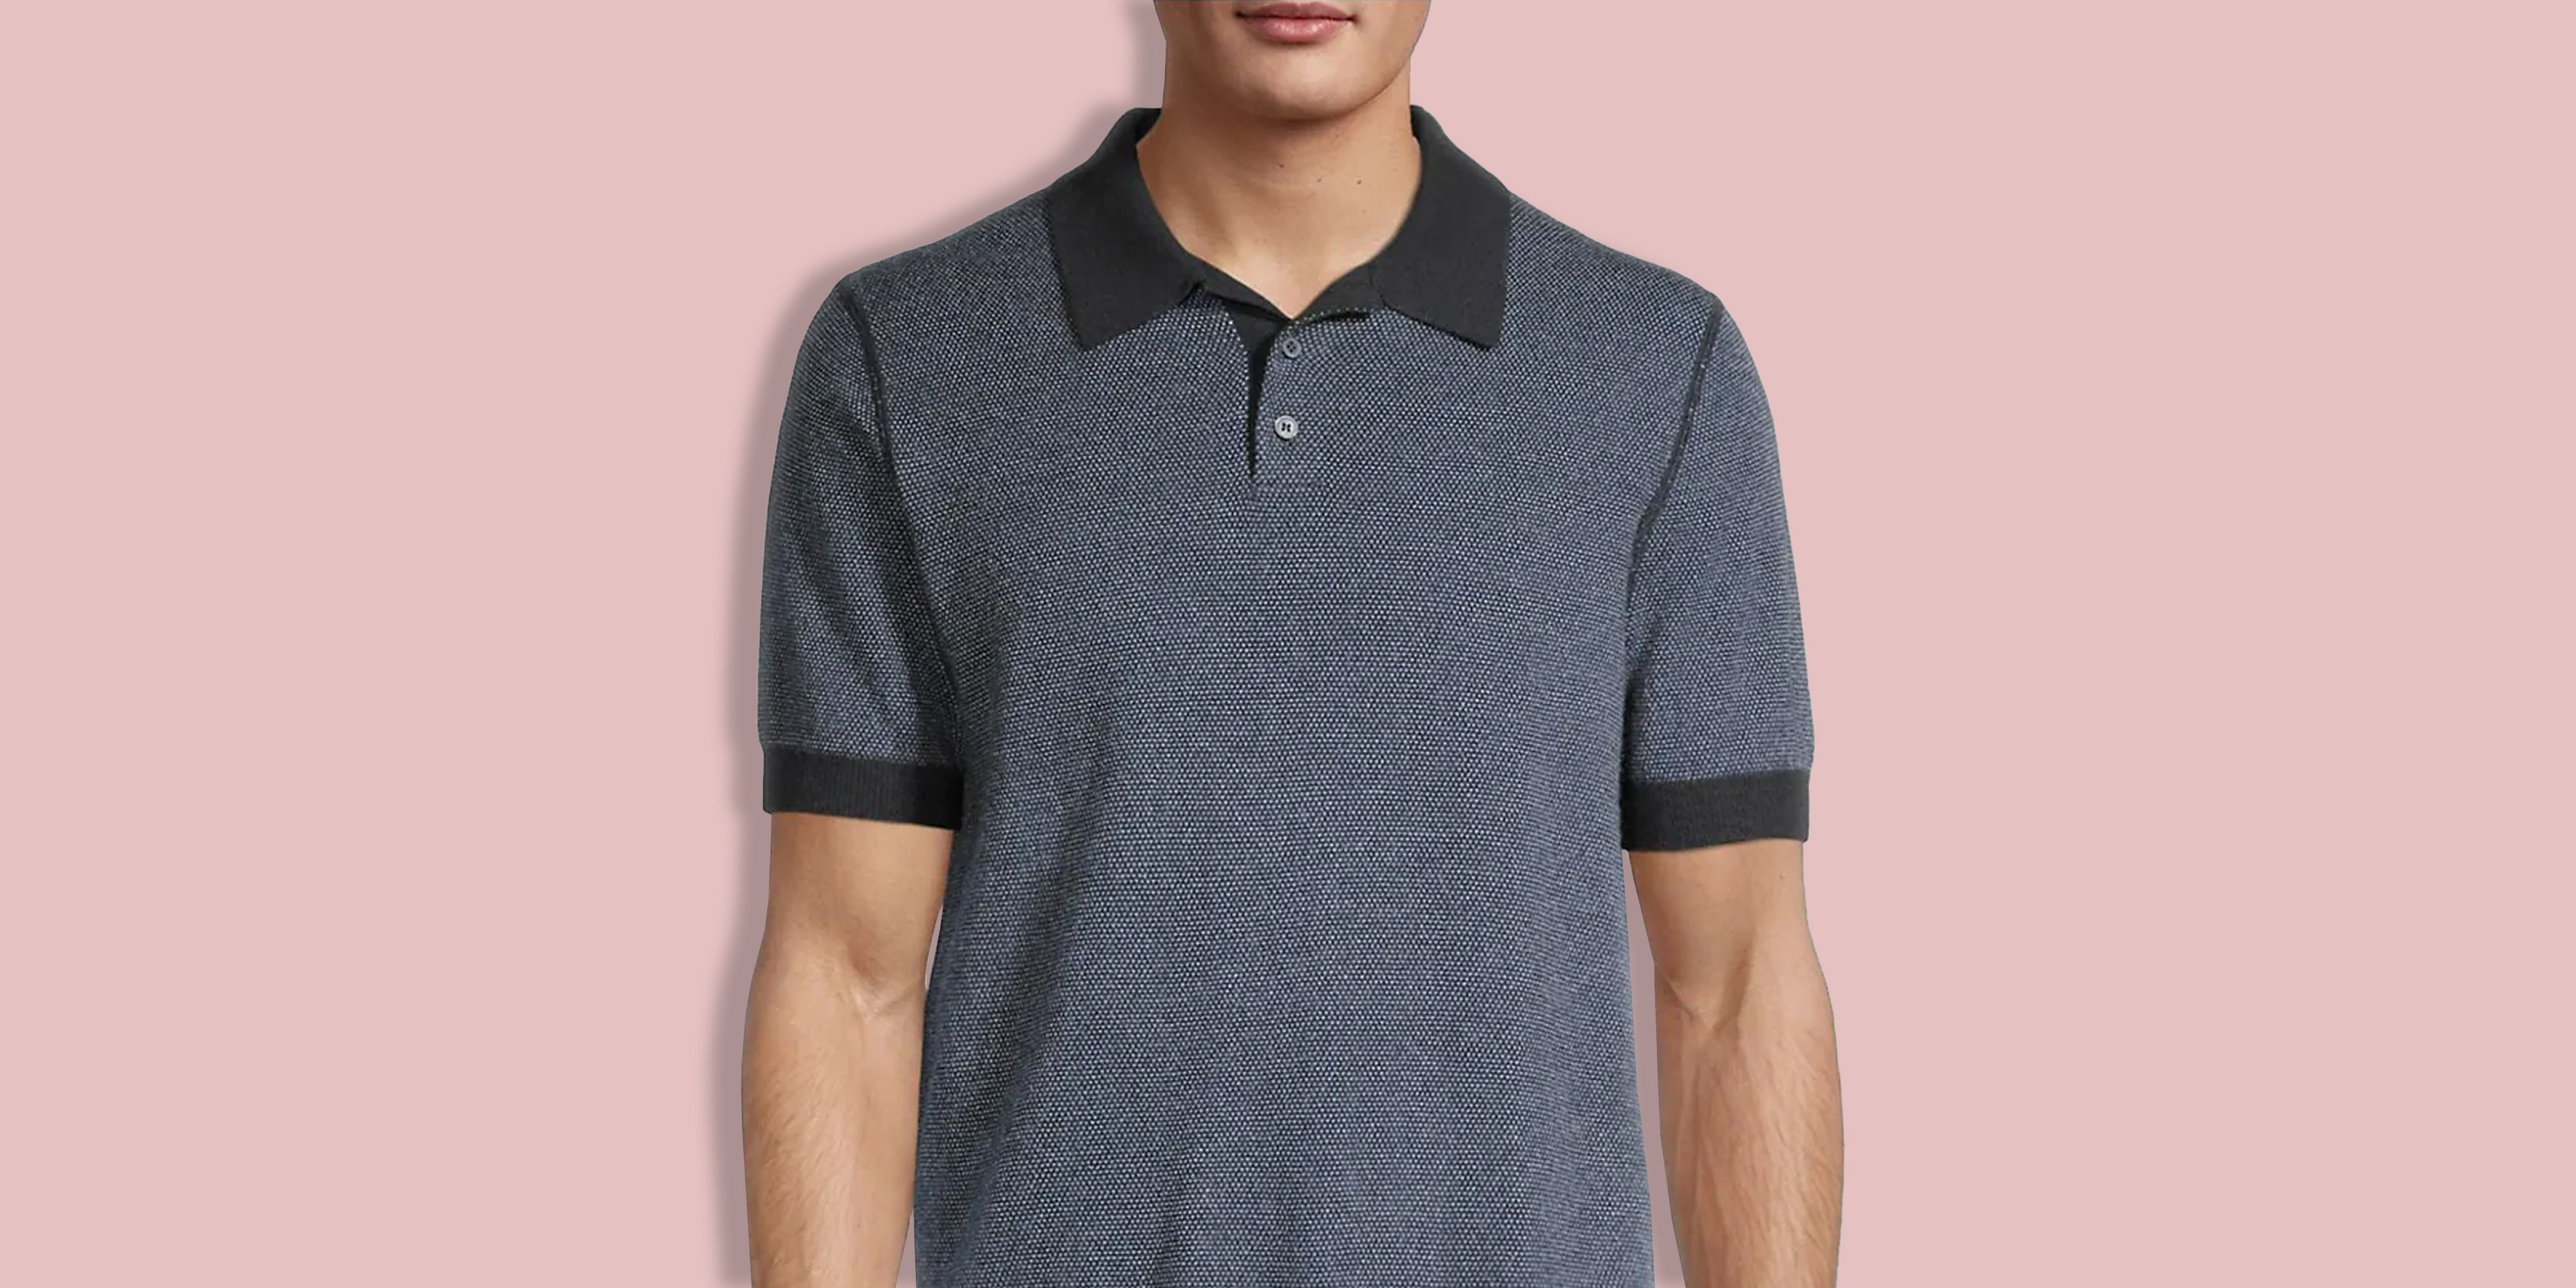 Men's Polo Shirts: Jersey, Knit, & More, Men